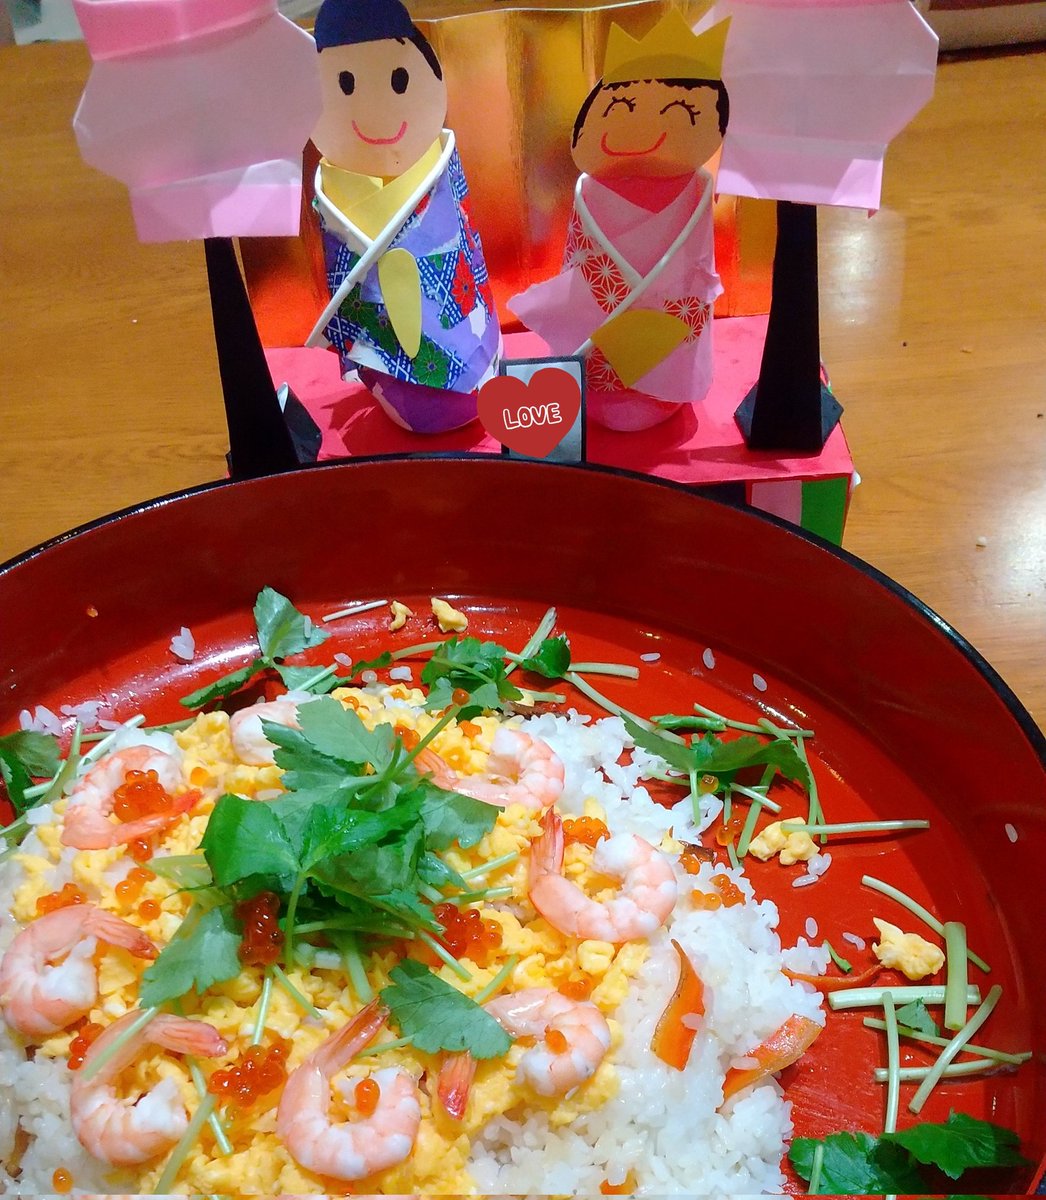 ひな祭り🎎
娘が作った雛人形と
母と娘で作ったちらし寿司でお祝いです🎵
#６歳  #hinadolls #ひな祭り